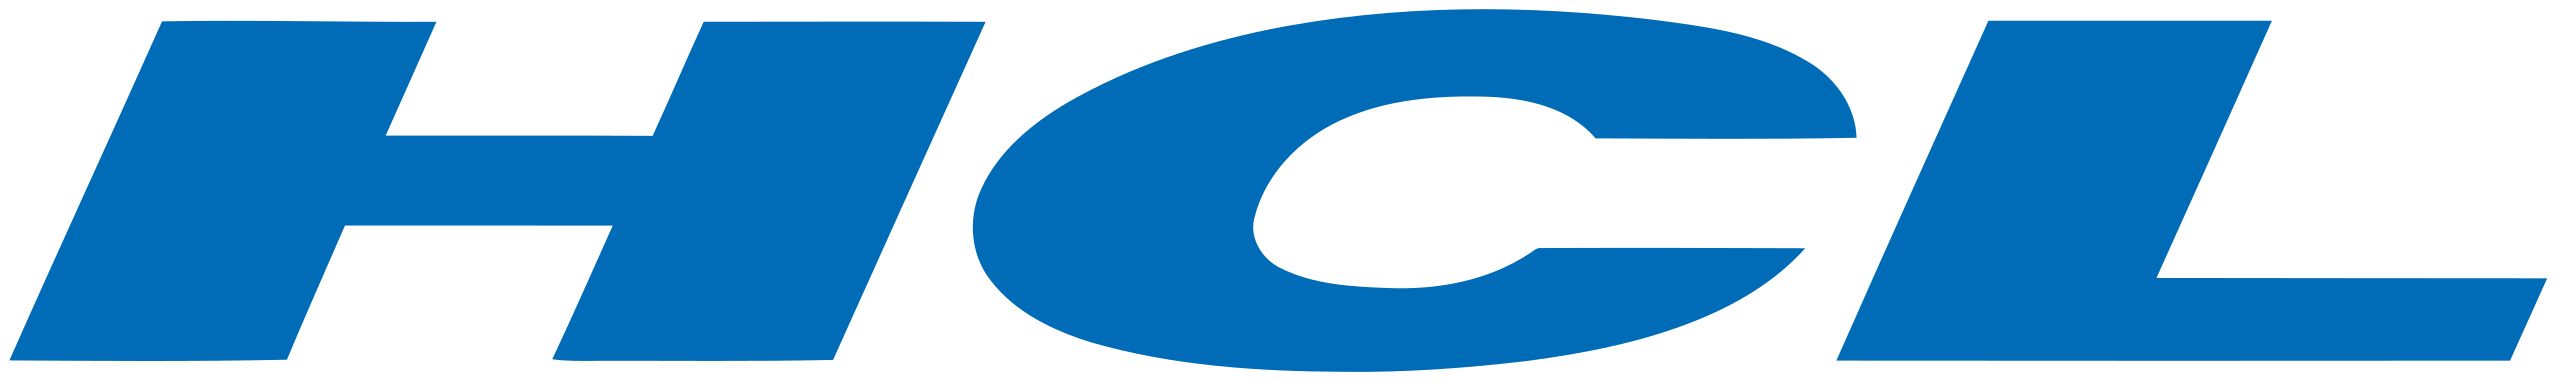 HCL ロゴ